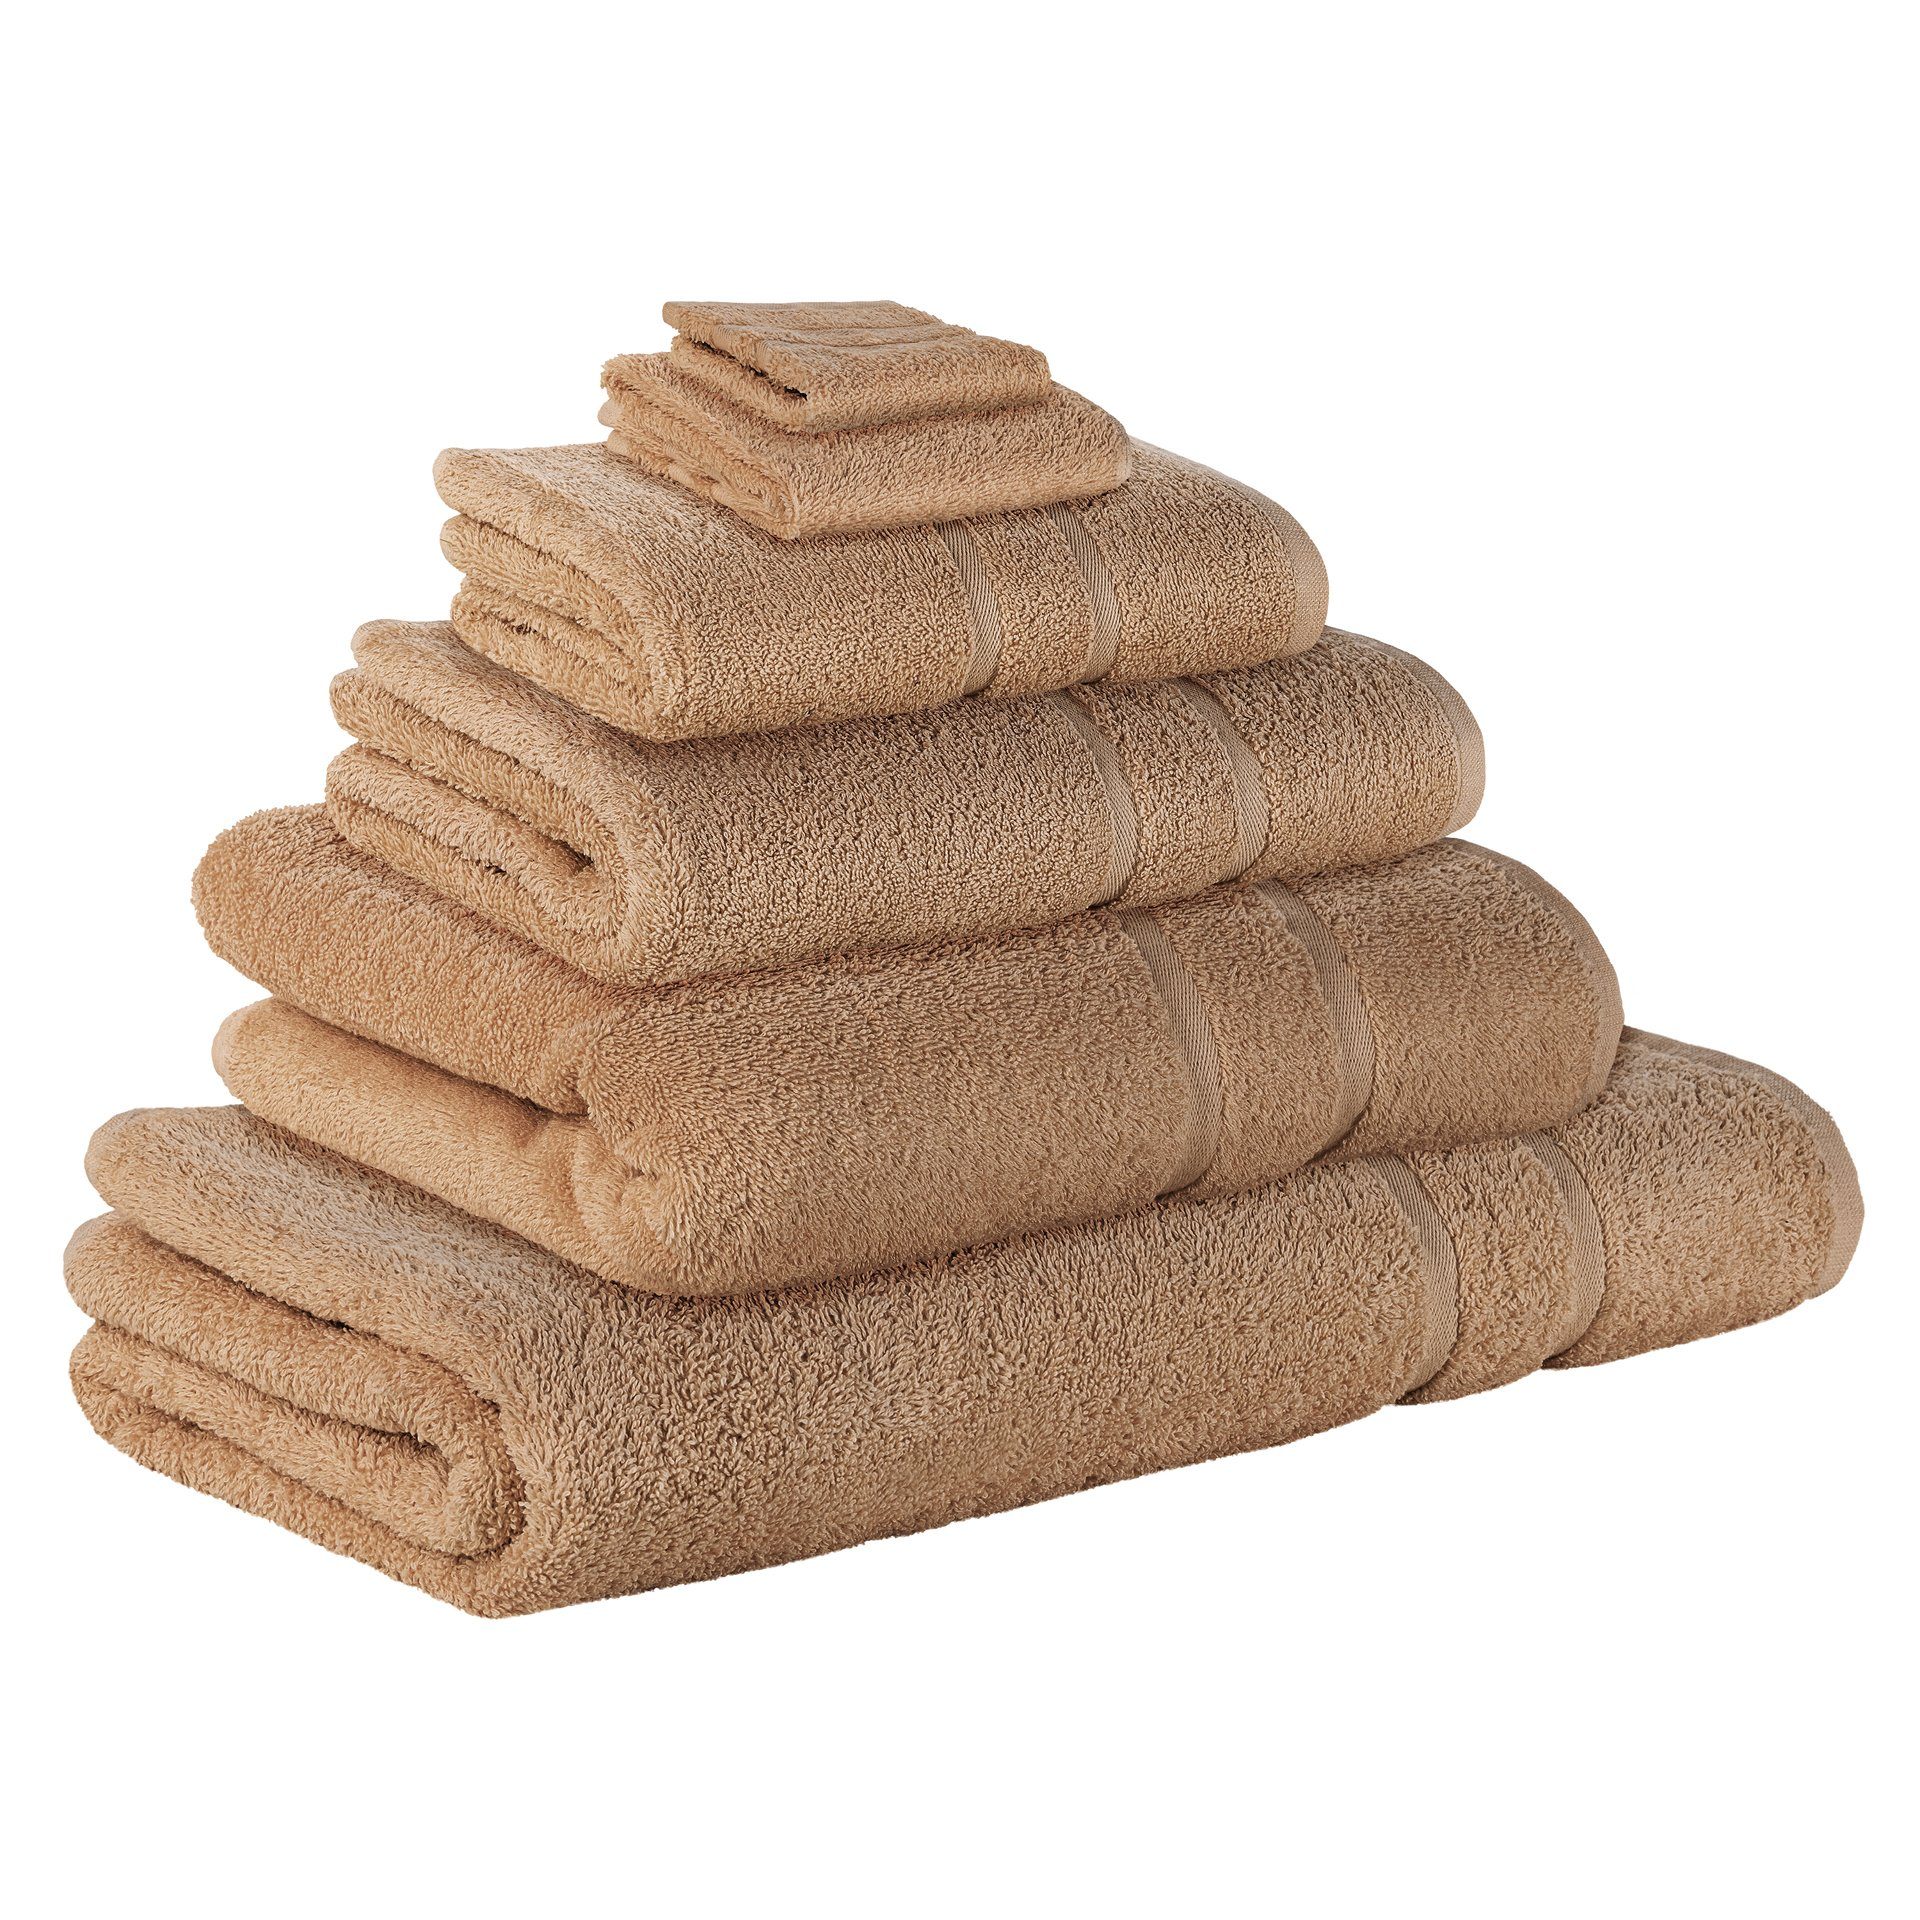 Handtuch-Set in braun online kaufen | OTTO